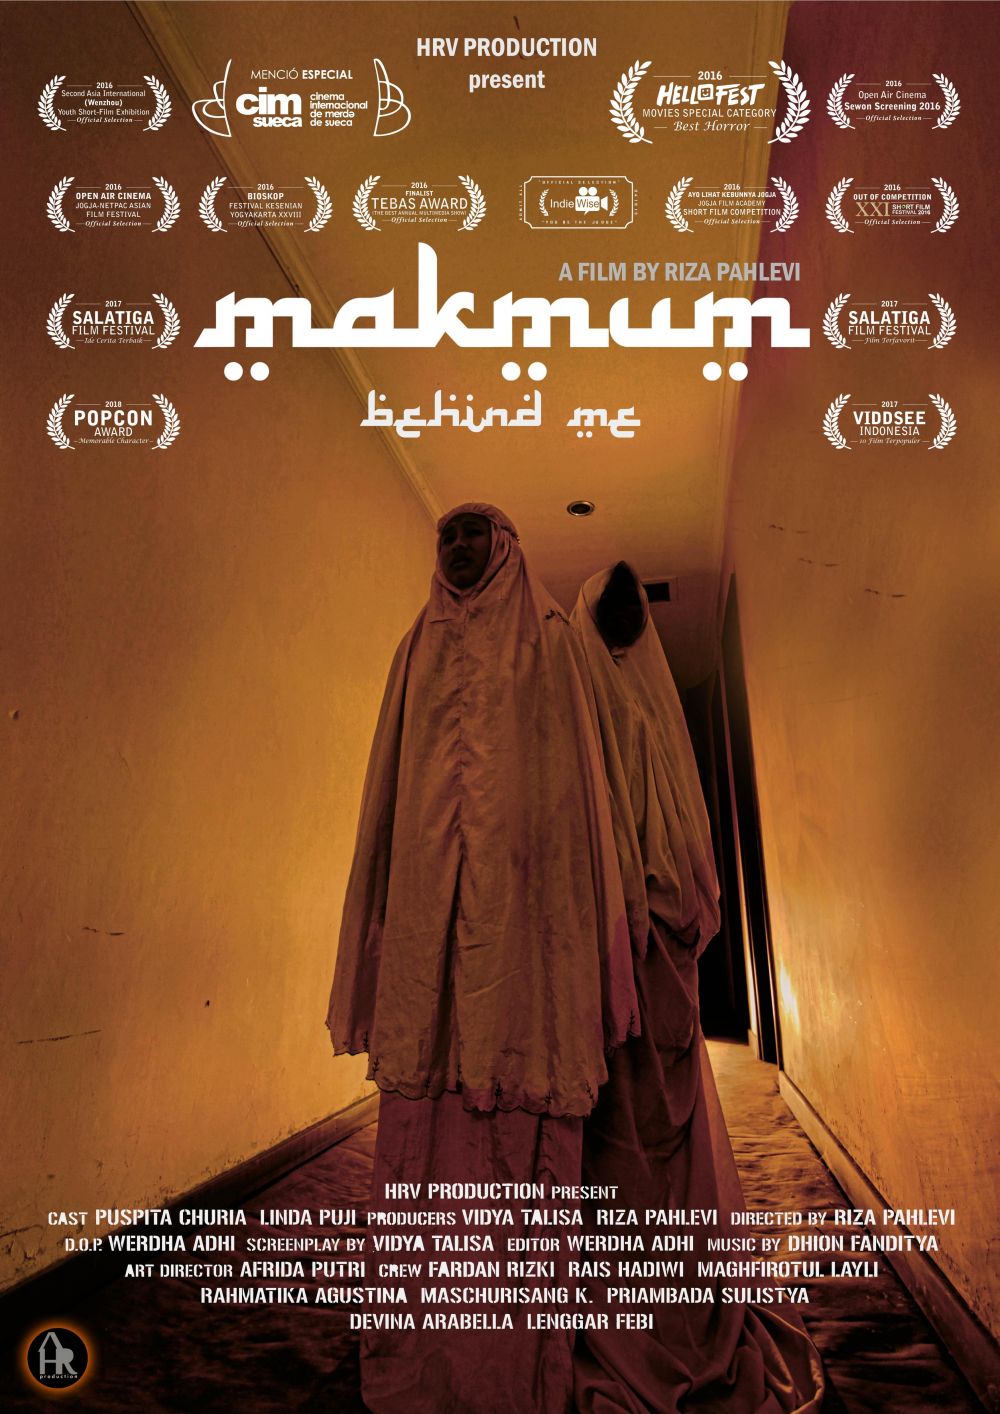 Mengenal Riza Pahlevi, sosok di balik film Makmum yang mendunia